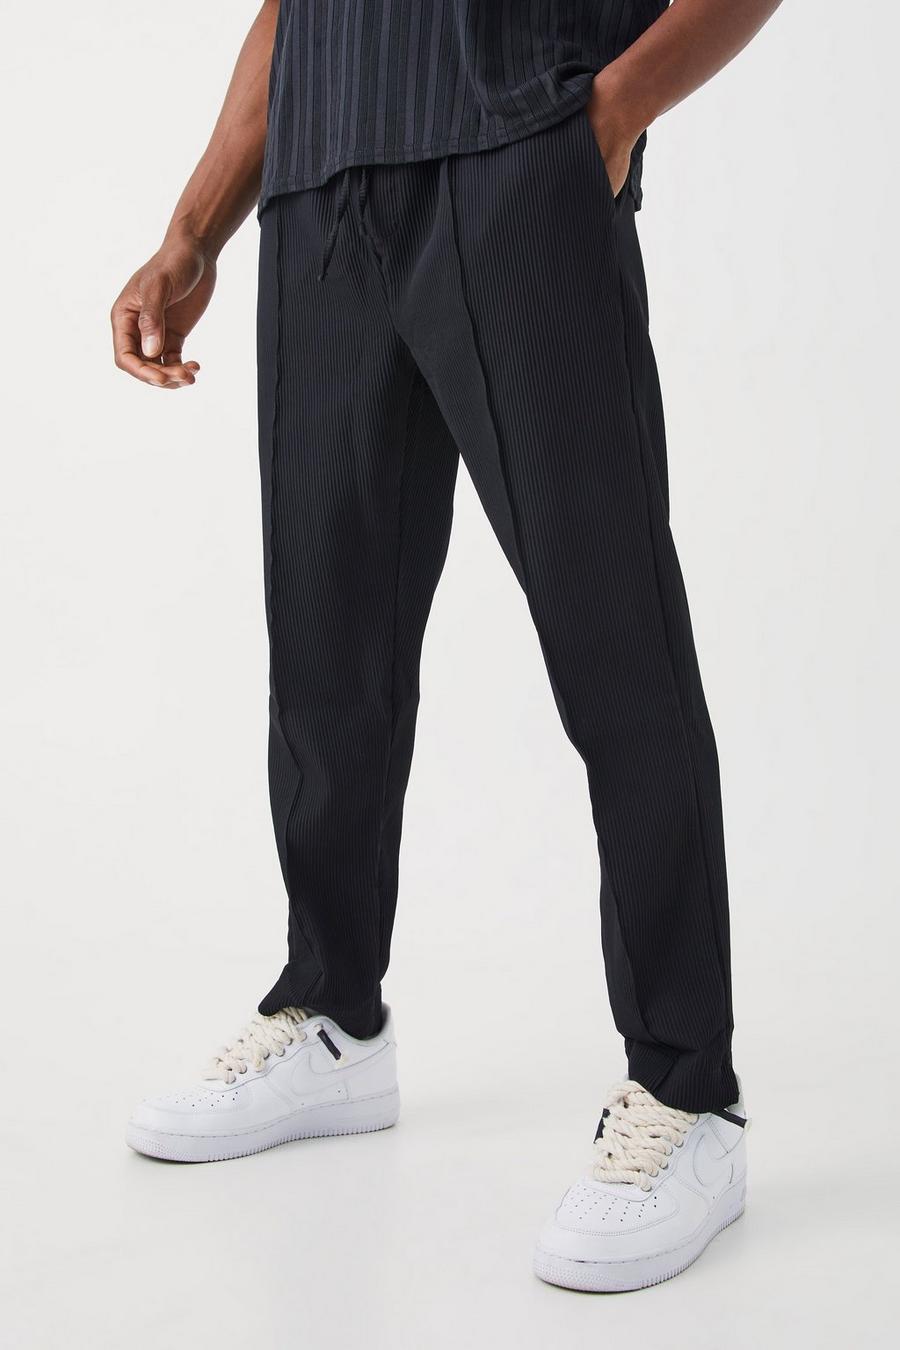 Pantalón plisado ajustado con cintura elástica, Black